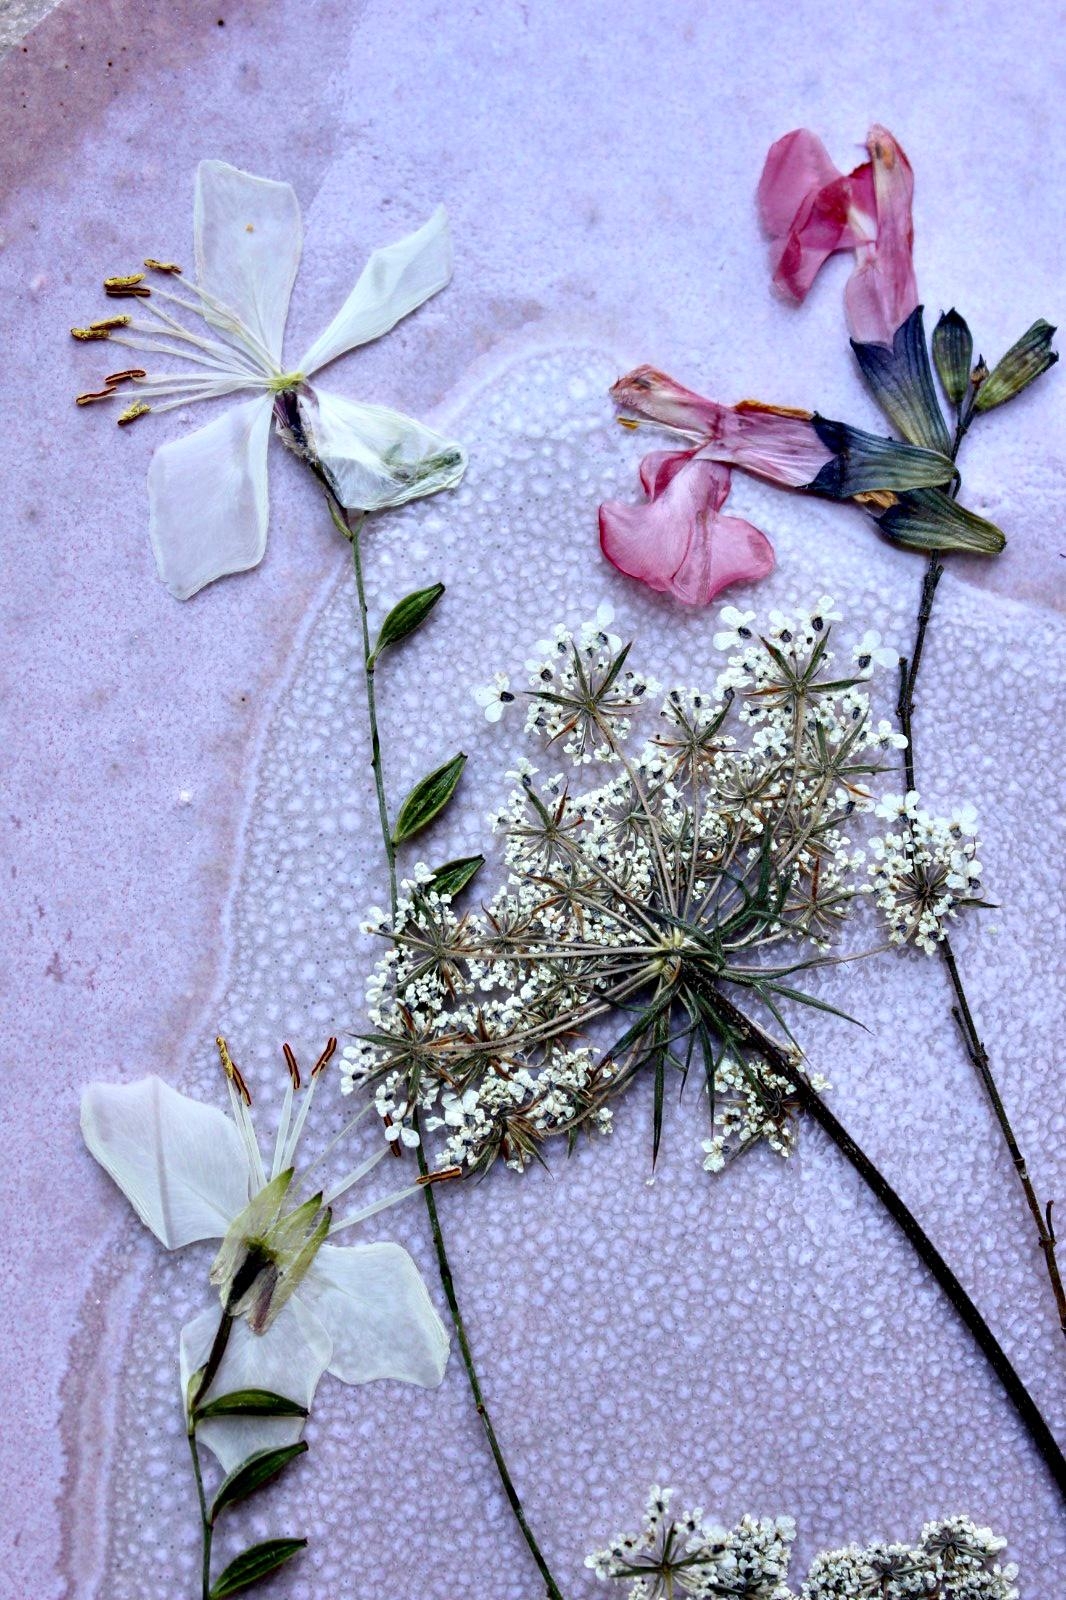 #herbarium #mitbringsel #urlaub #driedflowers #blumenpresse #couchliebt #couchstyle